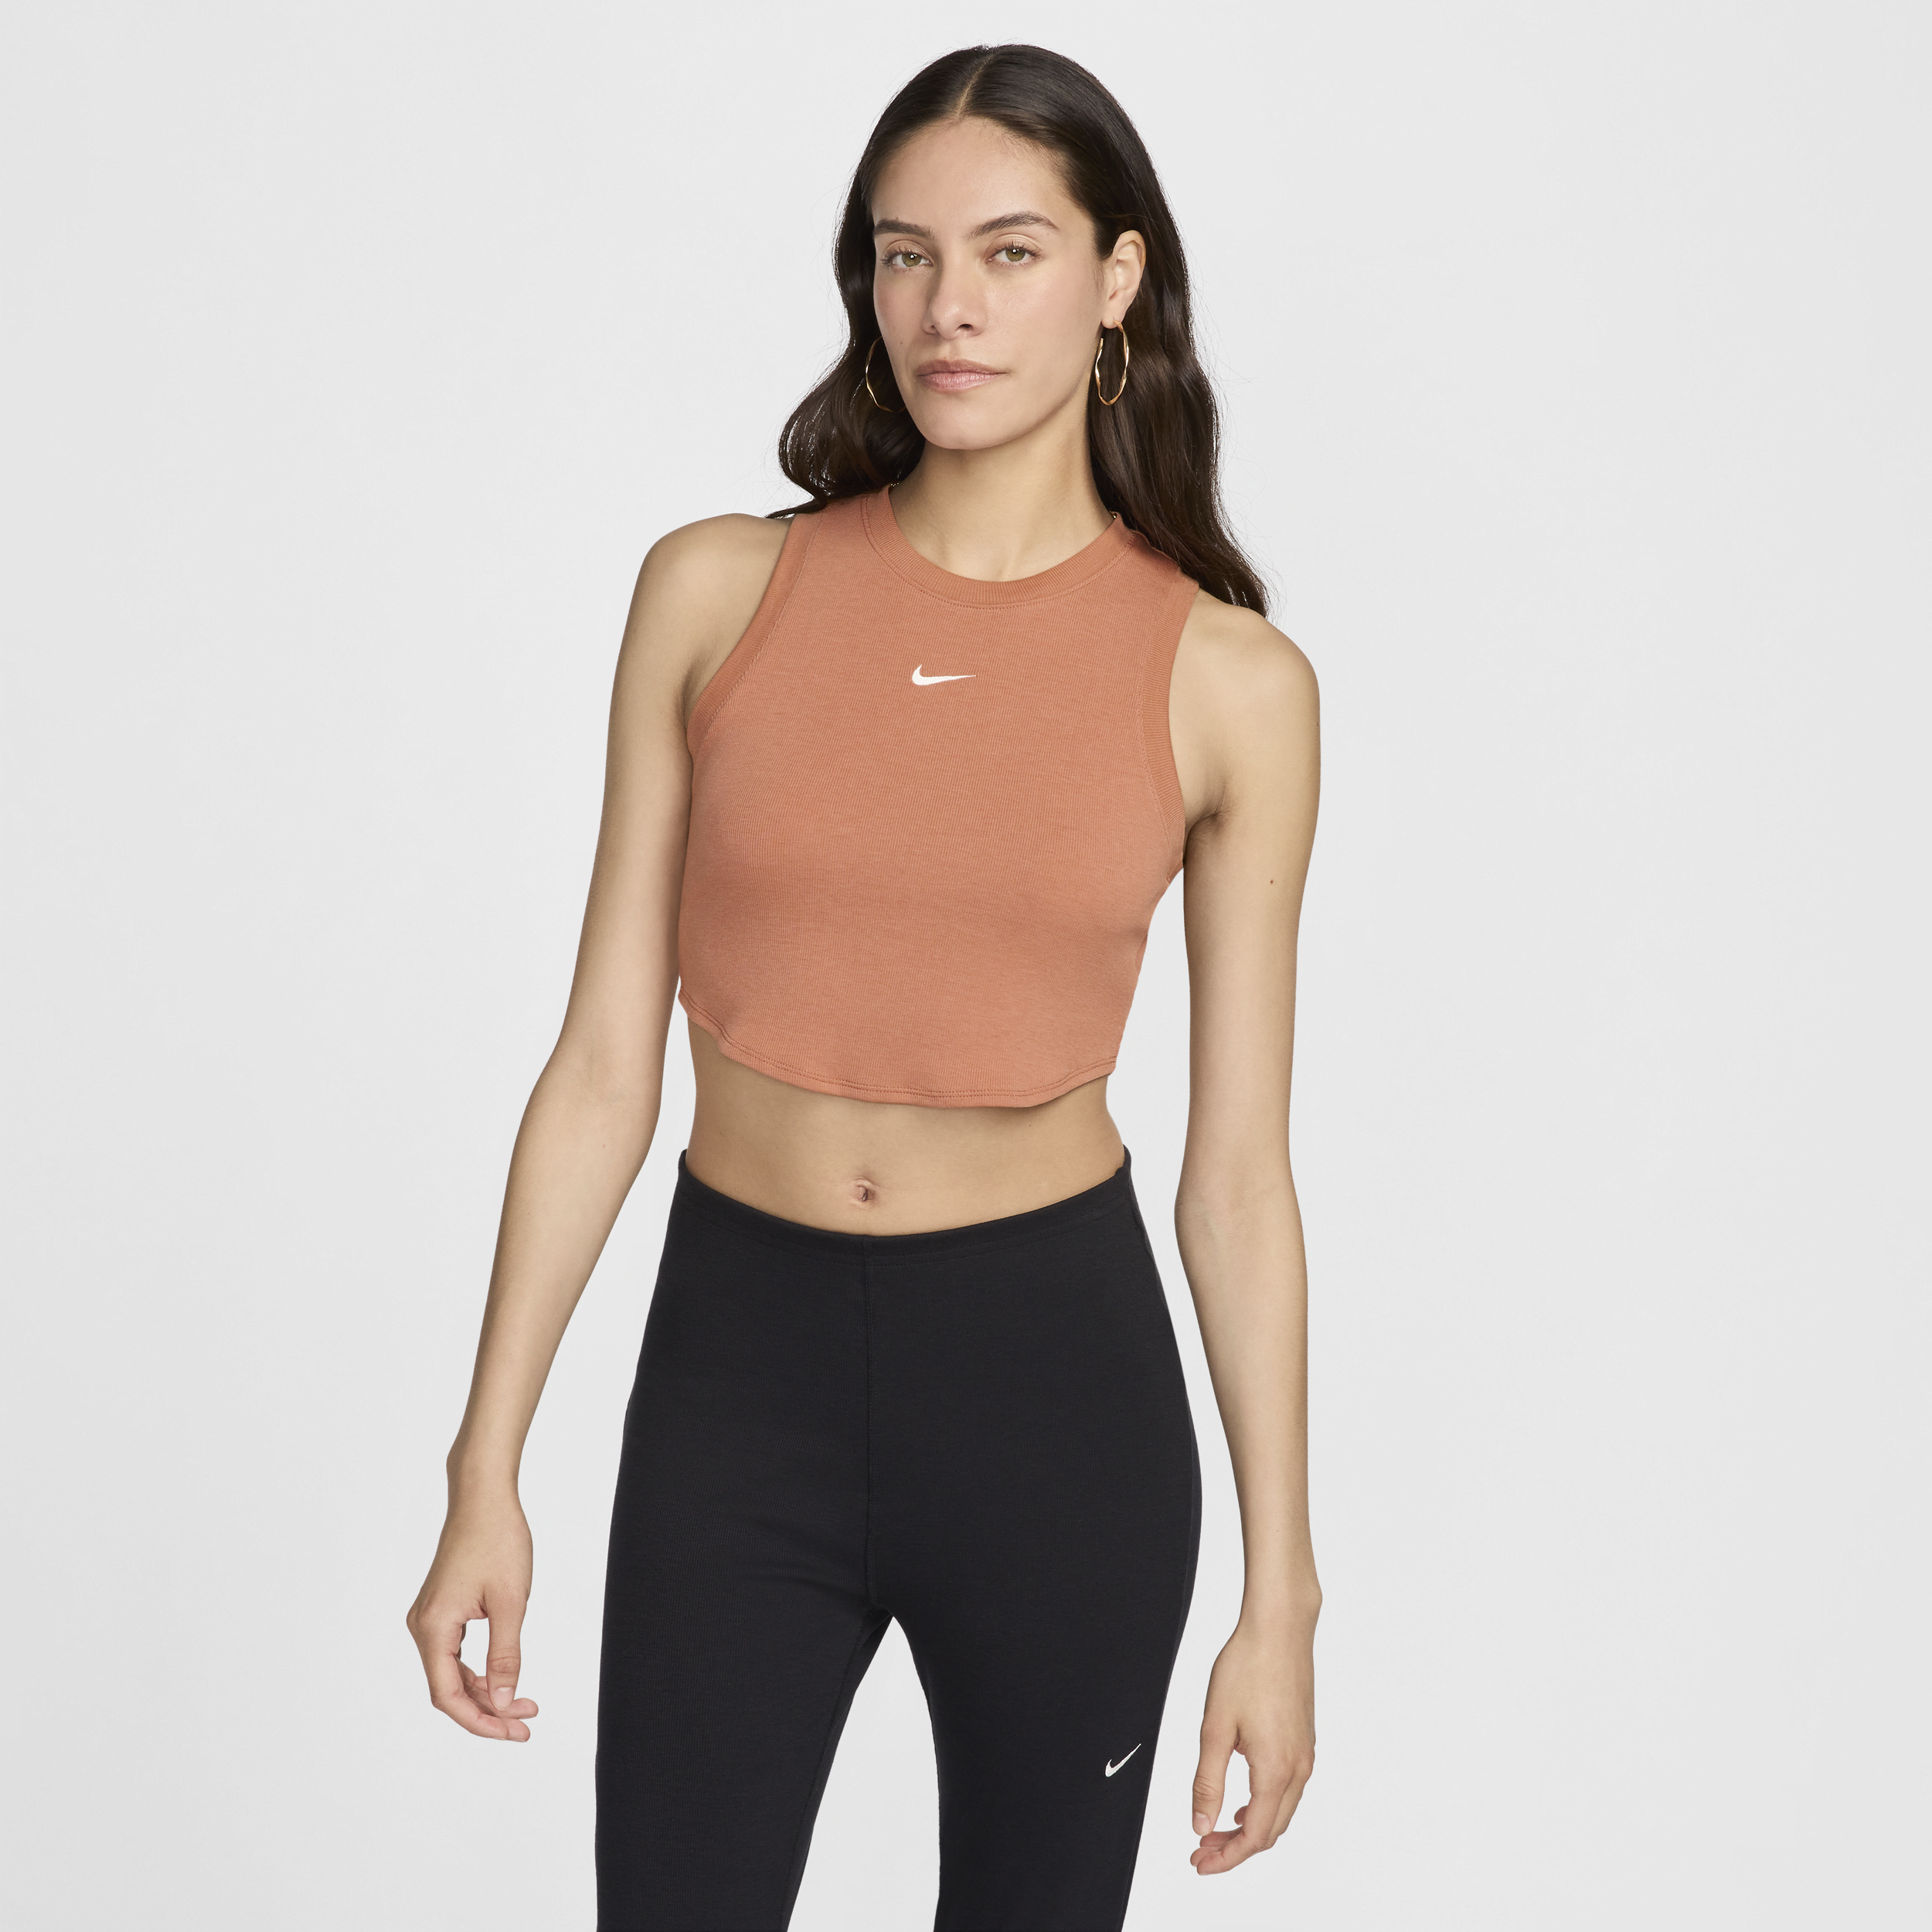 Canotta corta e aderente a mini costine Nike Sportswear Chill Knit – Donna - Marrone